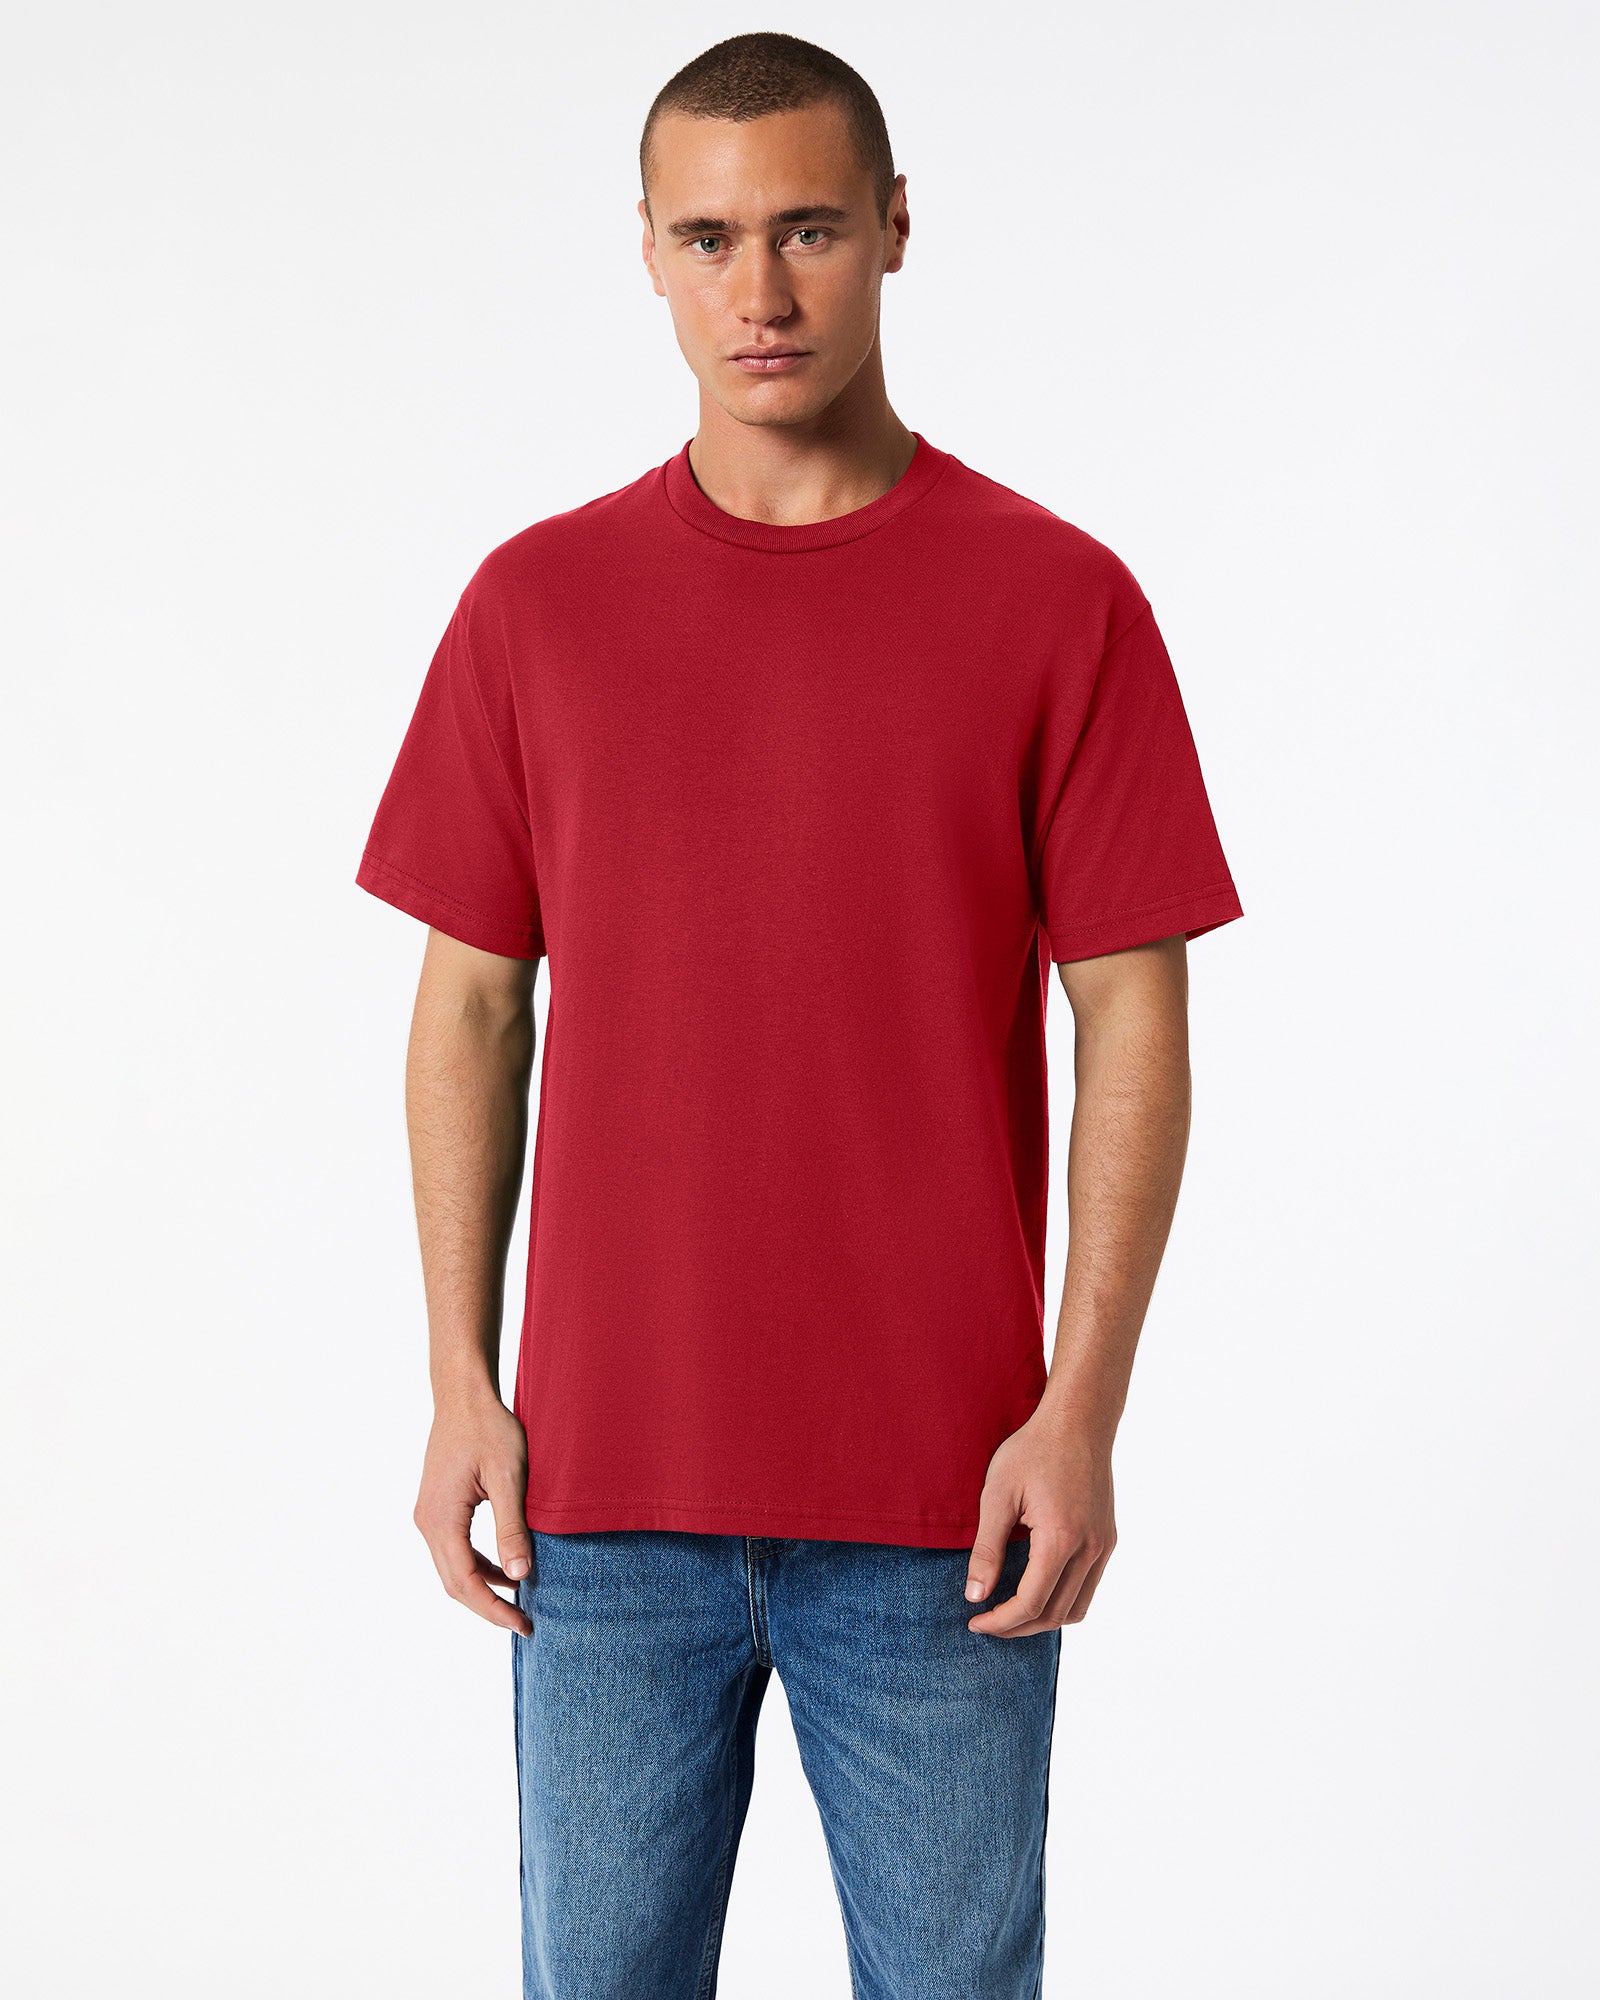 Heavyweight Unisex T-Shirt - Cardinal Red